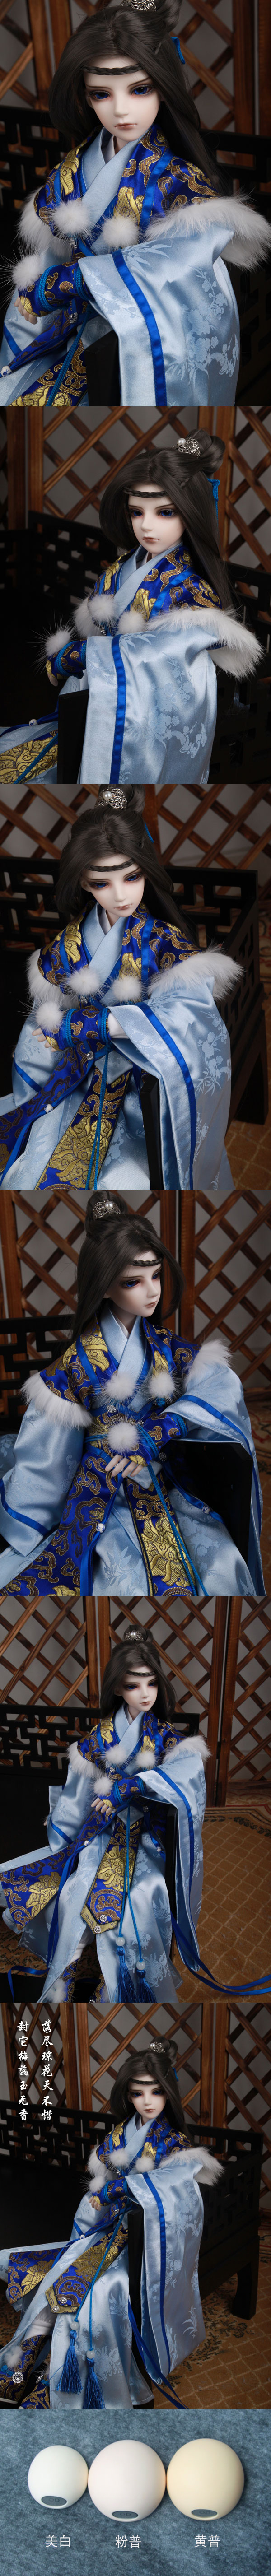 BJD Yu Wuying Boy 61cm Boll-jointed doll